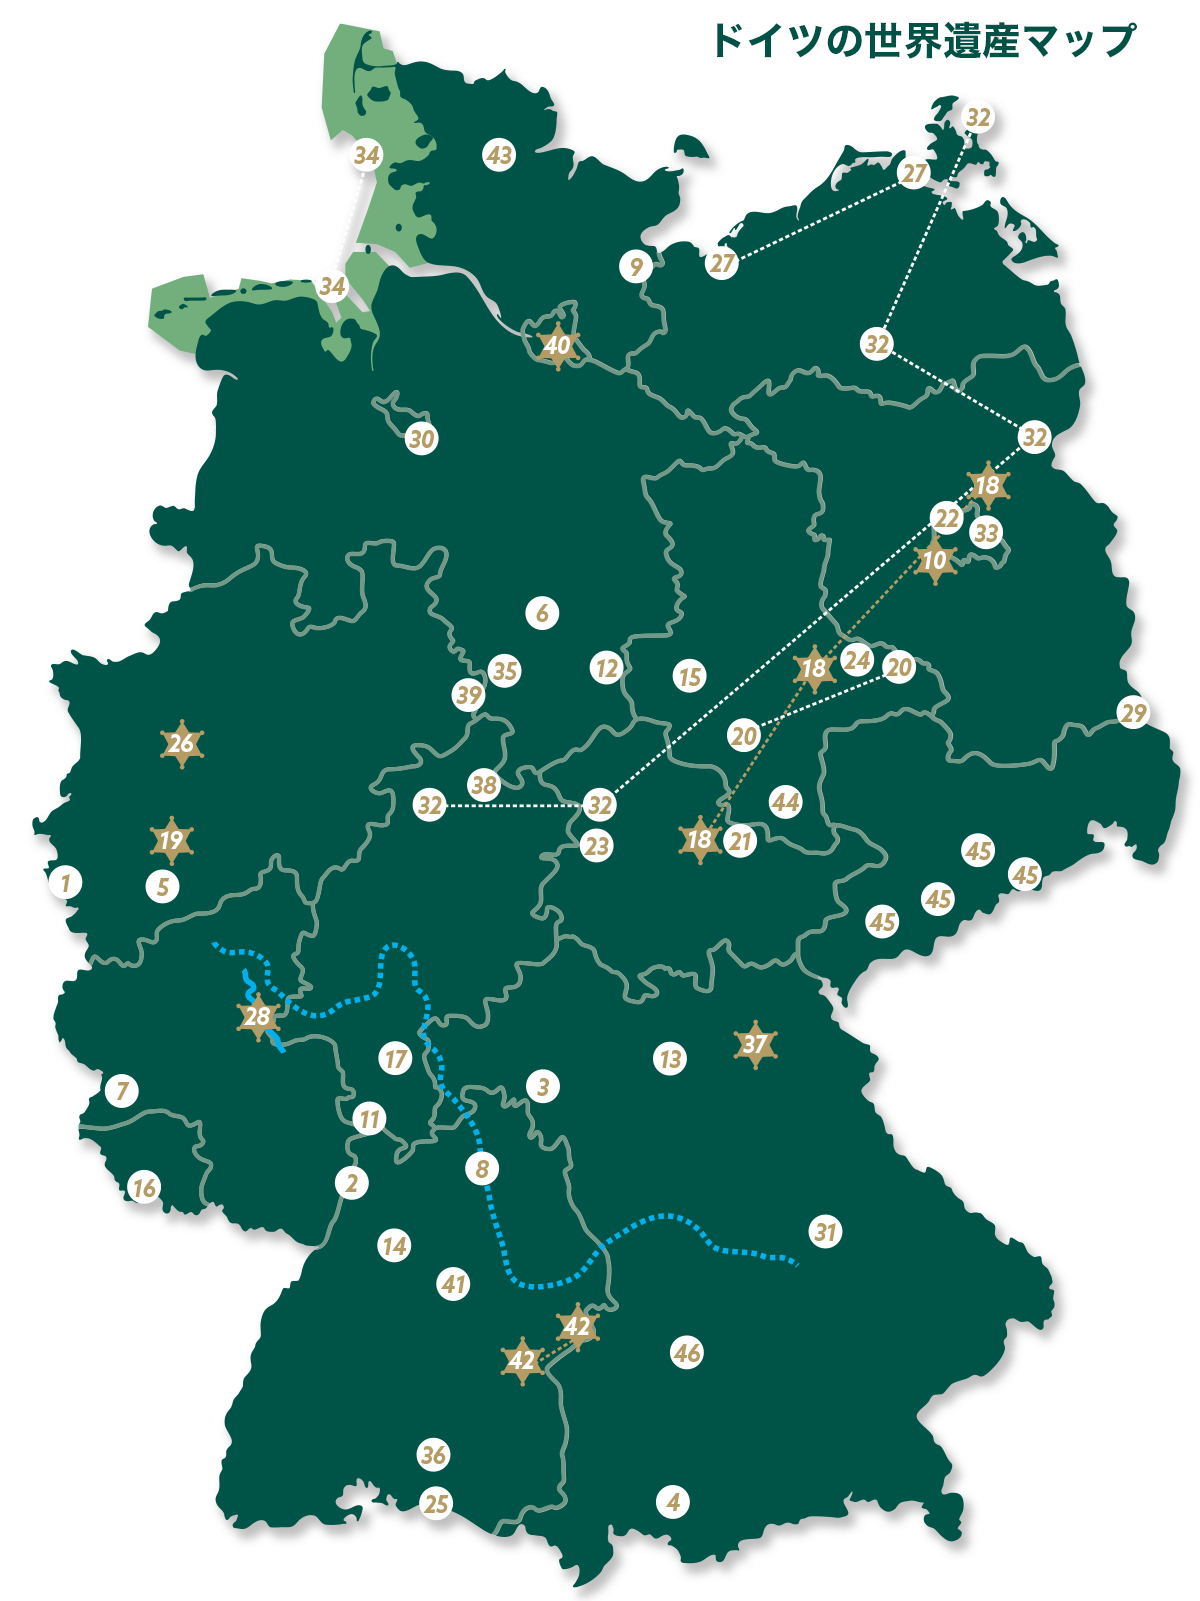 ドイツの世界遺産マップ